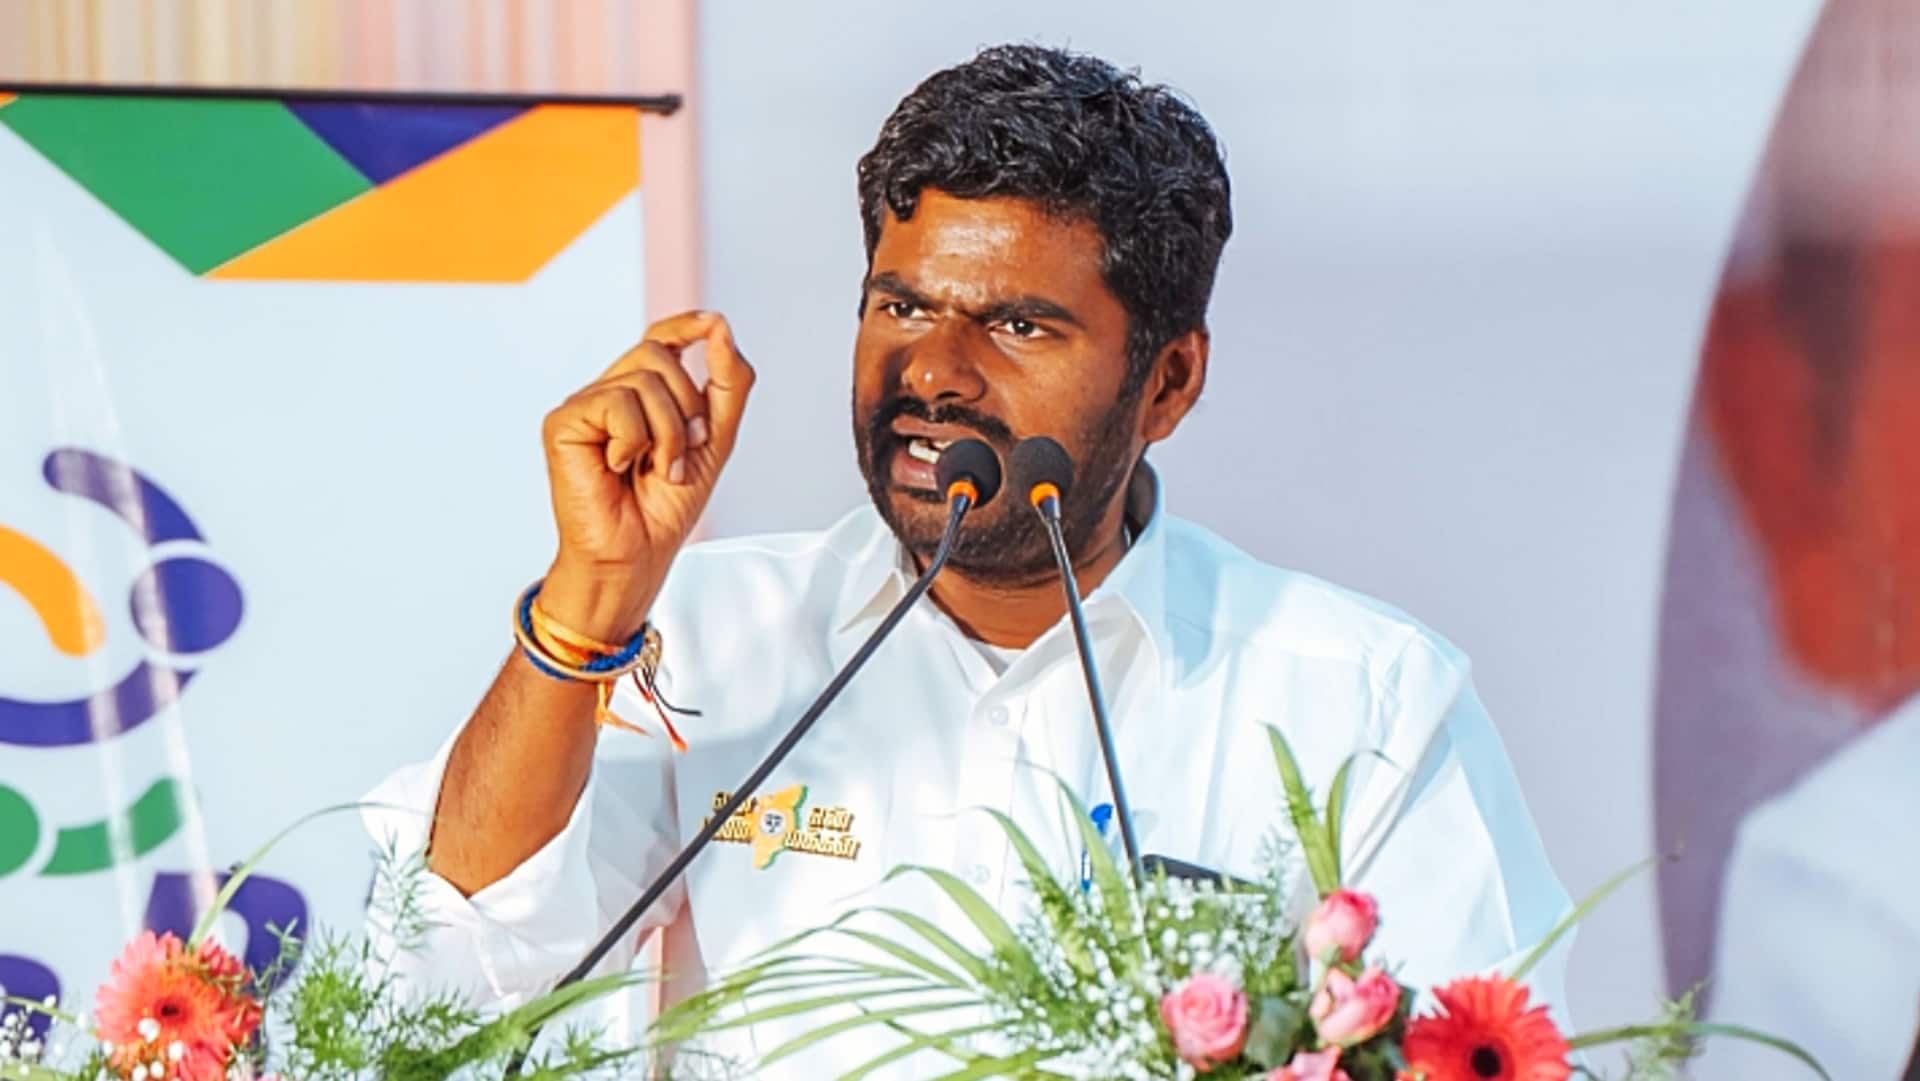 तमिलनाडु भाजपा अध्यक्ष अन्नामलाई की रैली को लेकर भिड़े भाजपा और DMK के कार्यकर्ता, FIR दर्ज